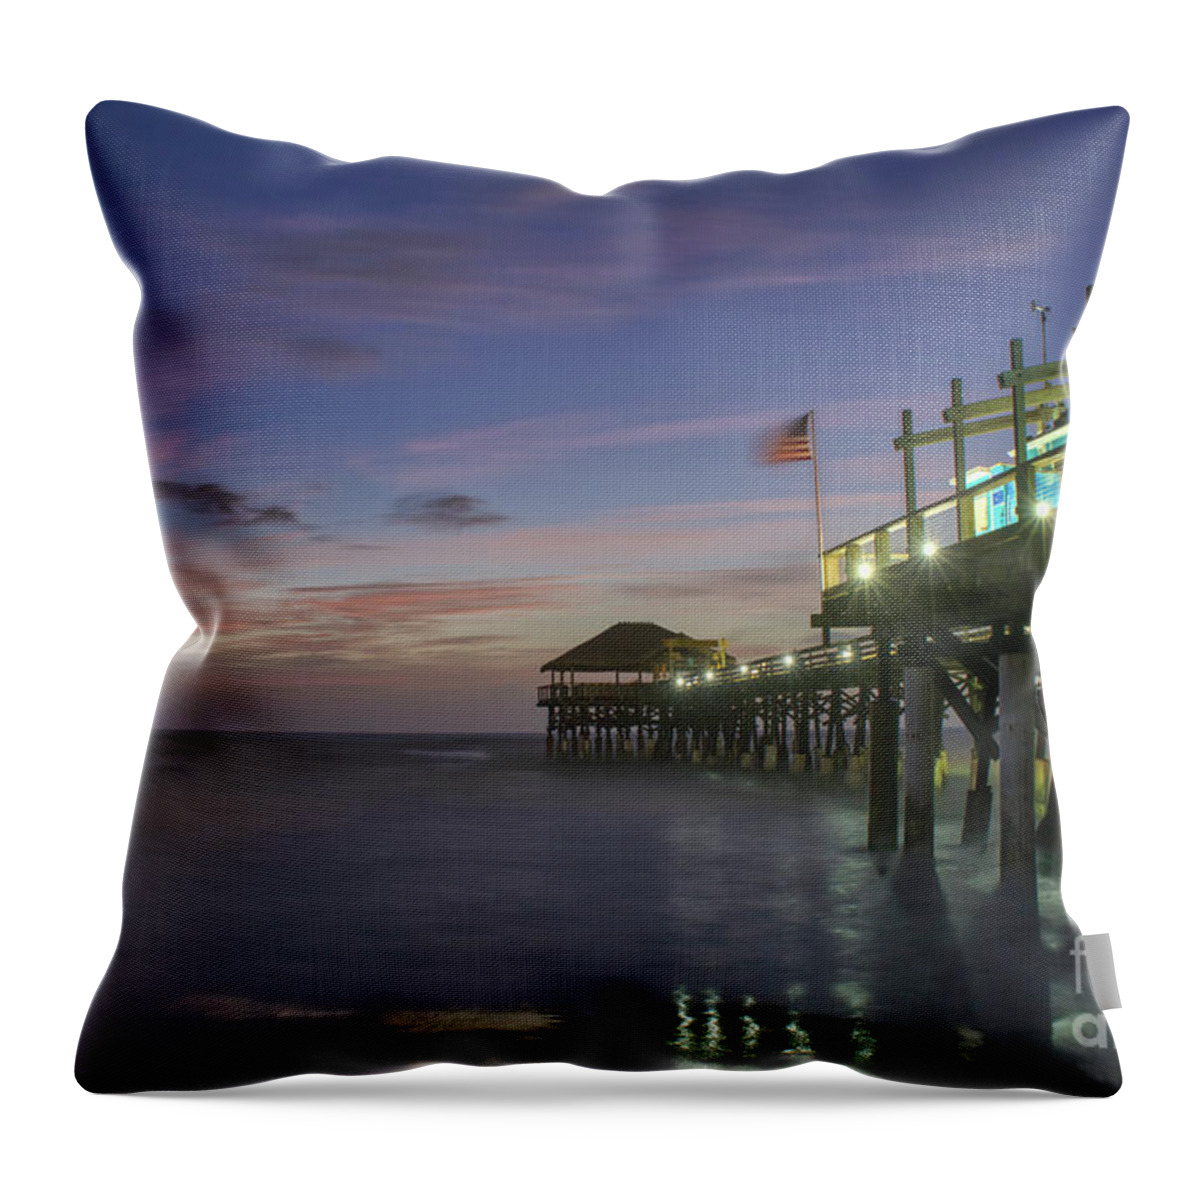 Sunrise Throw Pillow featuring the photograph Cocoa Beach Pier #3 by Brian Kamprath